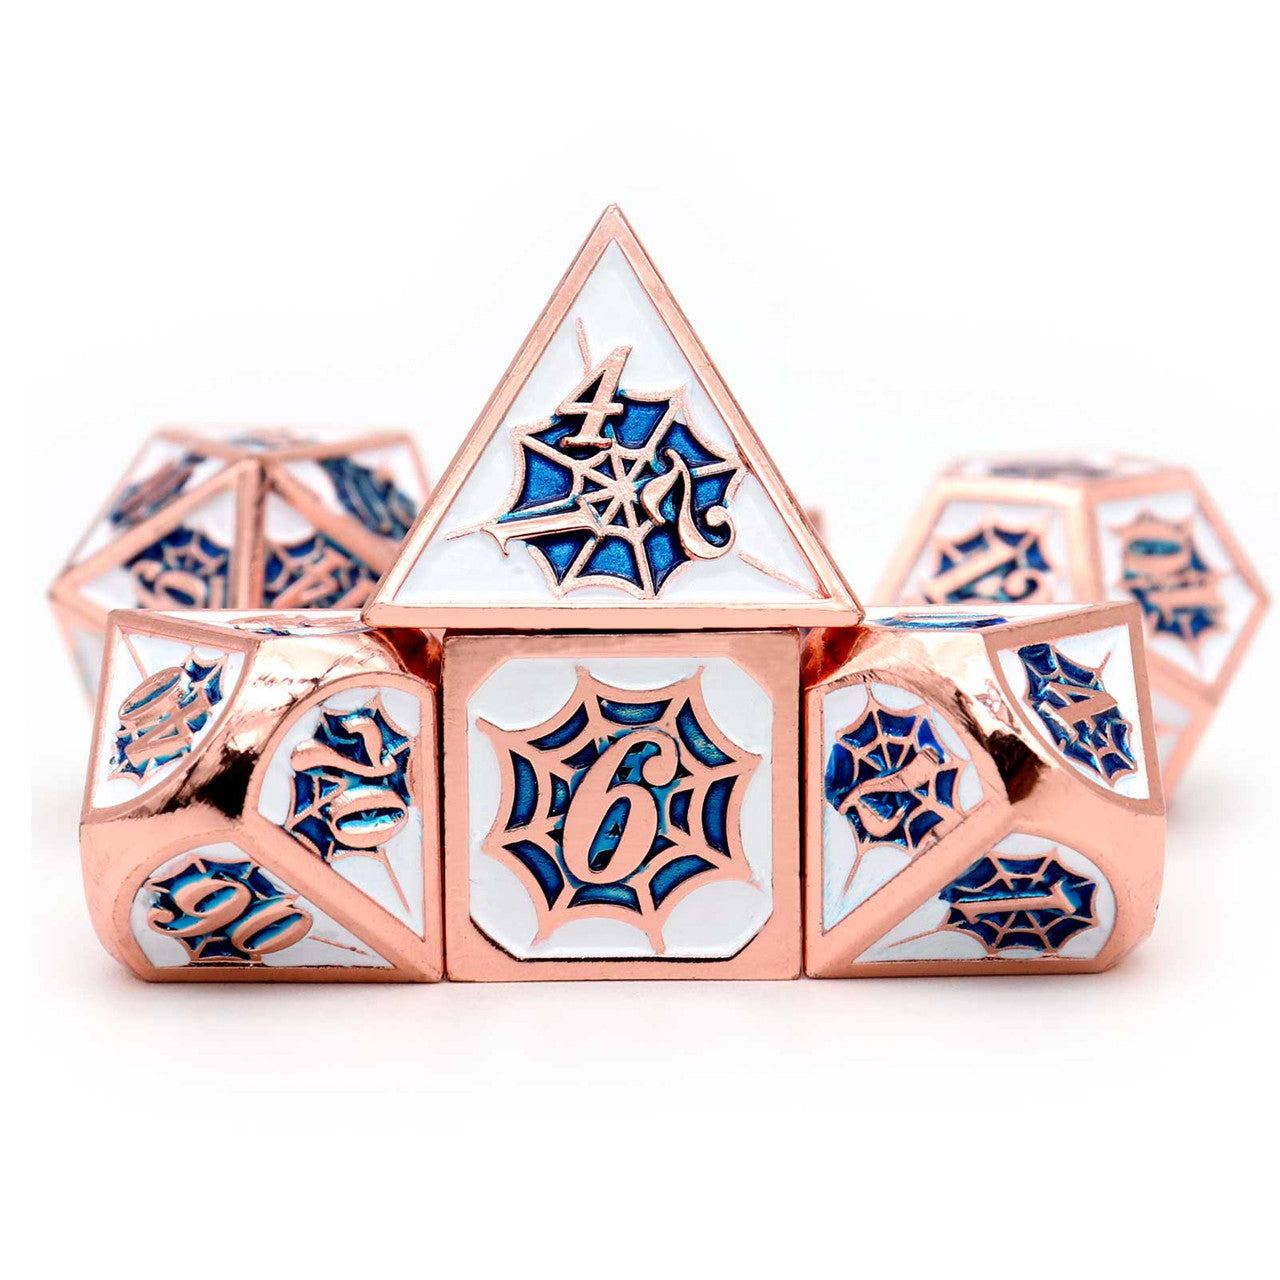 copper blue white dice, copper dice, copper metal dice, blue white dice, dnd dice, net dice, spider dice